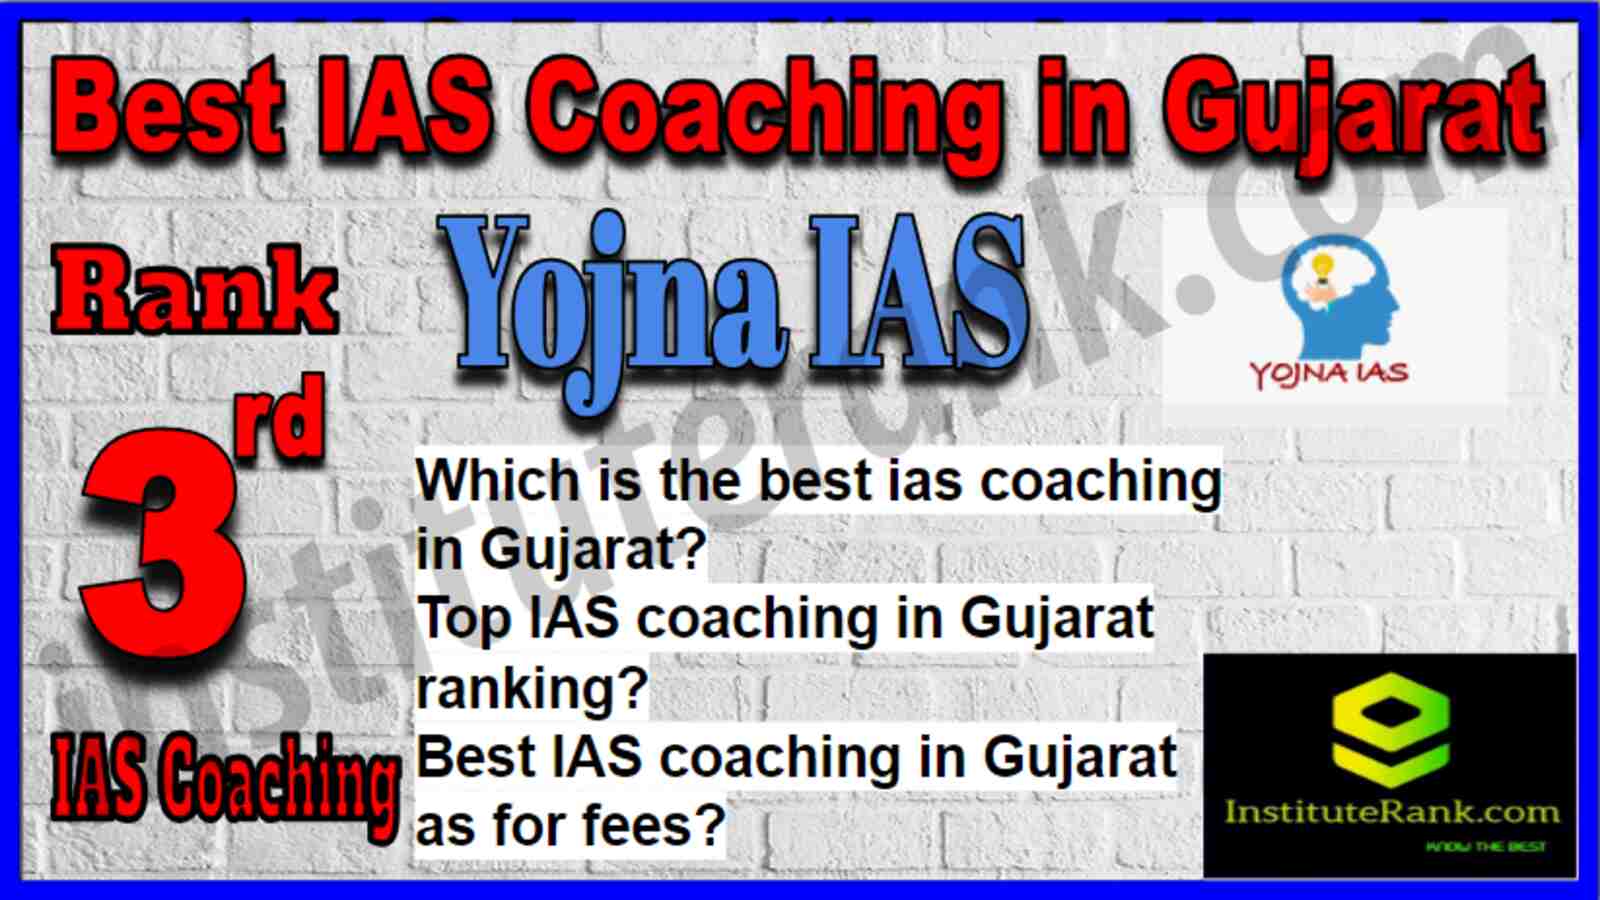 Rank 3 Best IAS Coaching in Gujarat